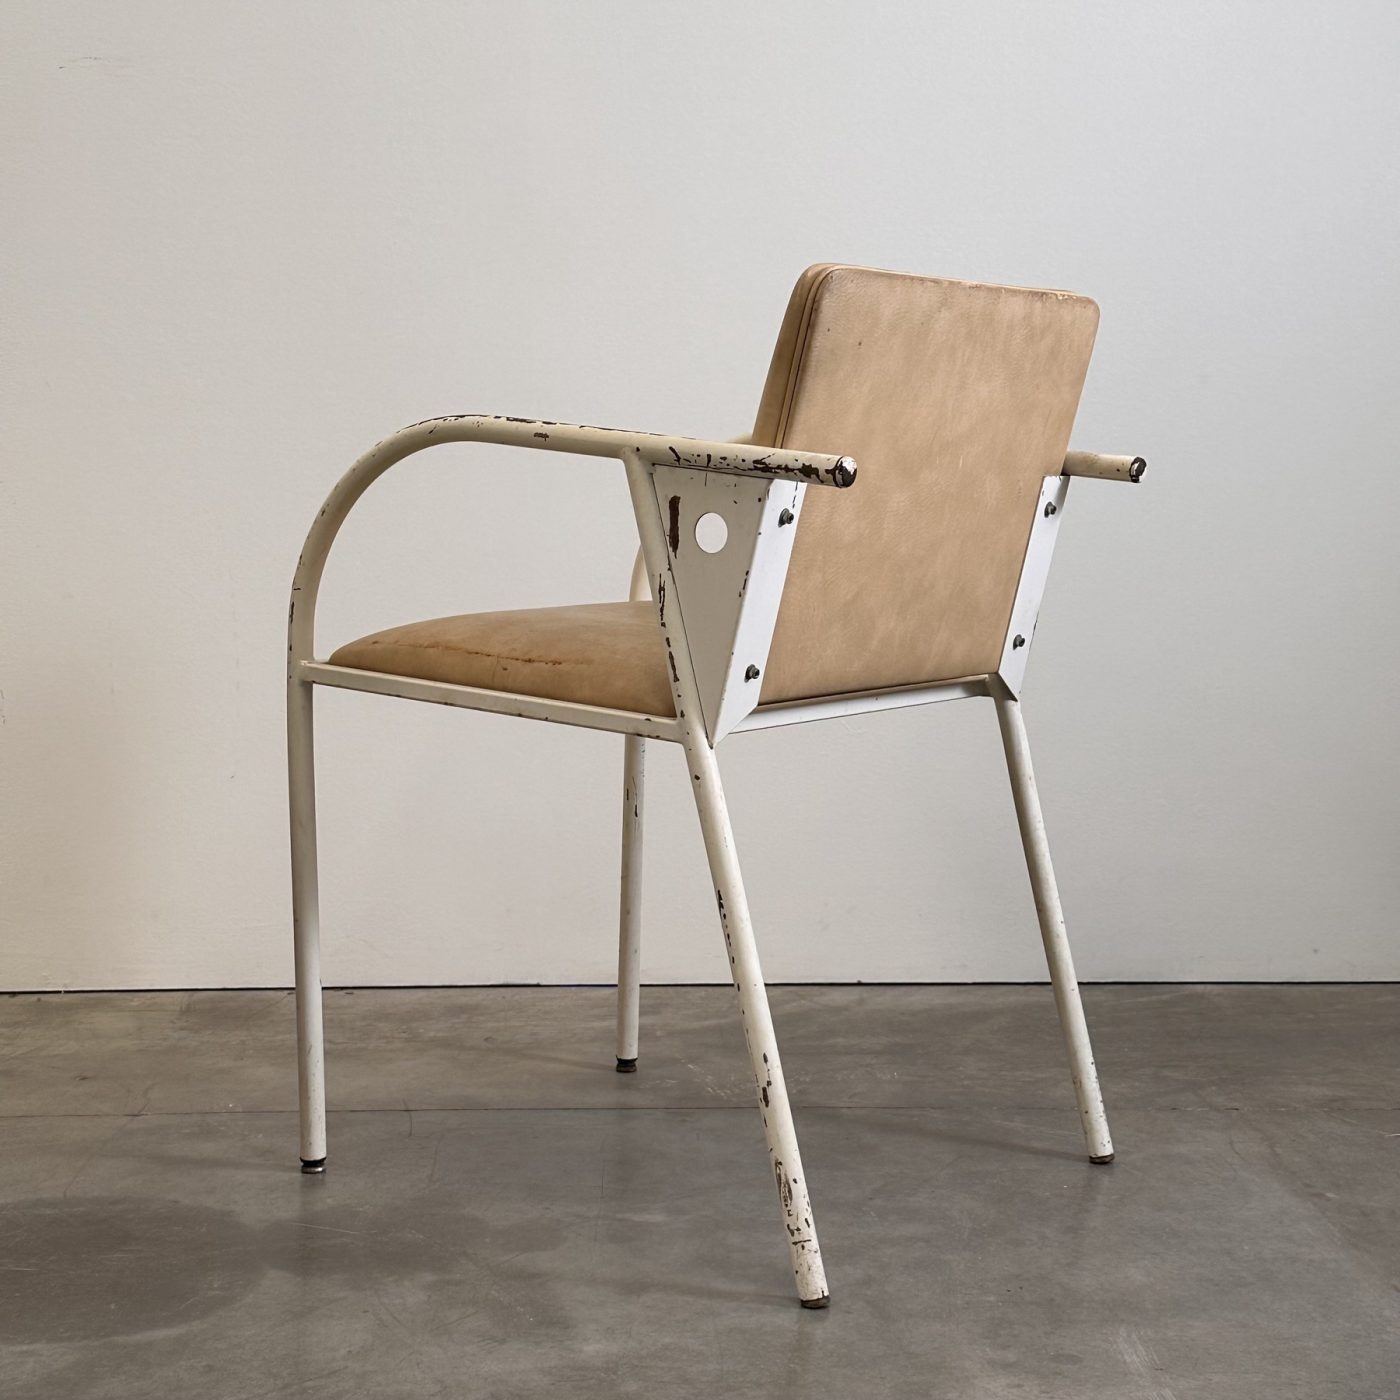 objet-vagabond-metal-armchairs0009